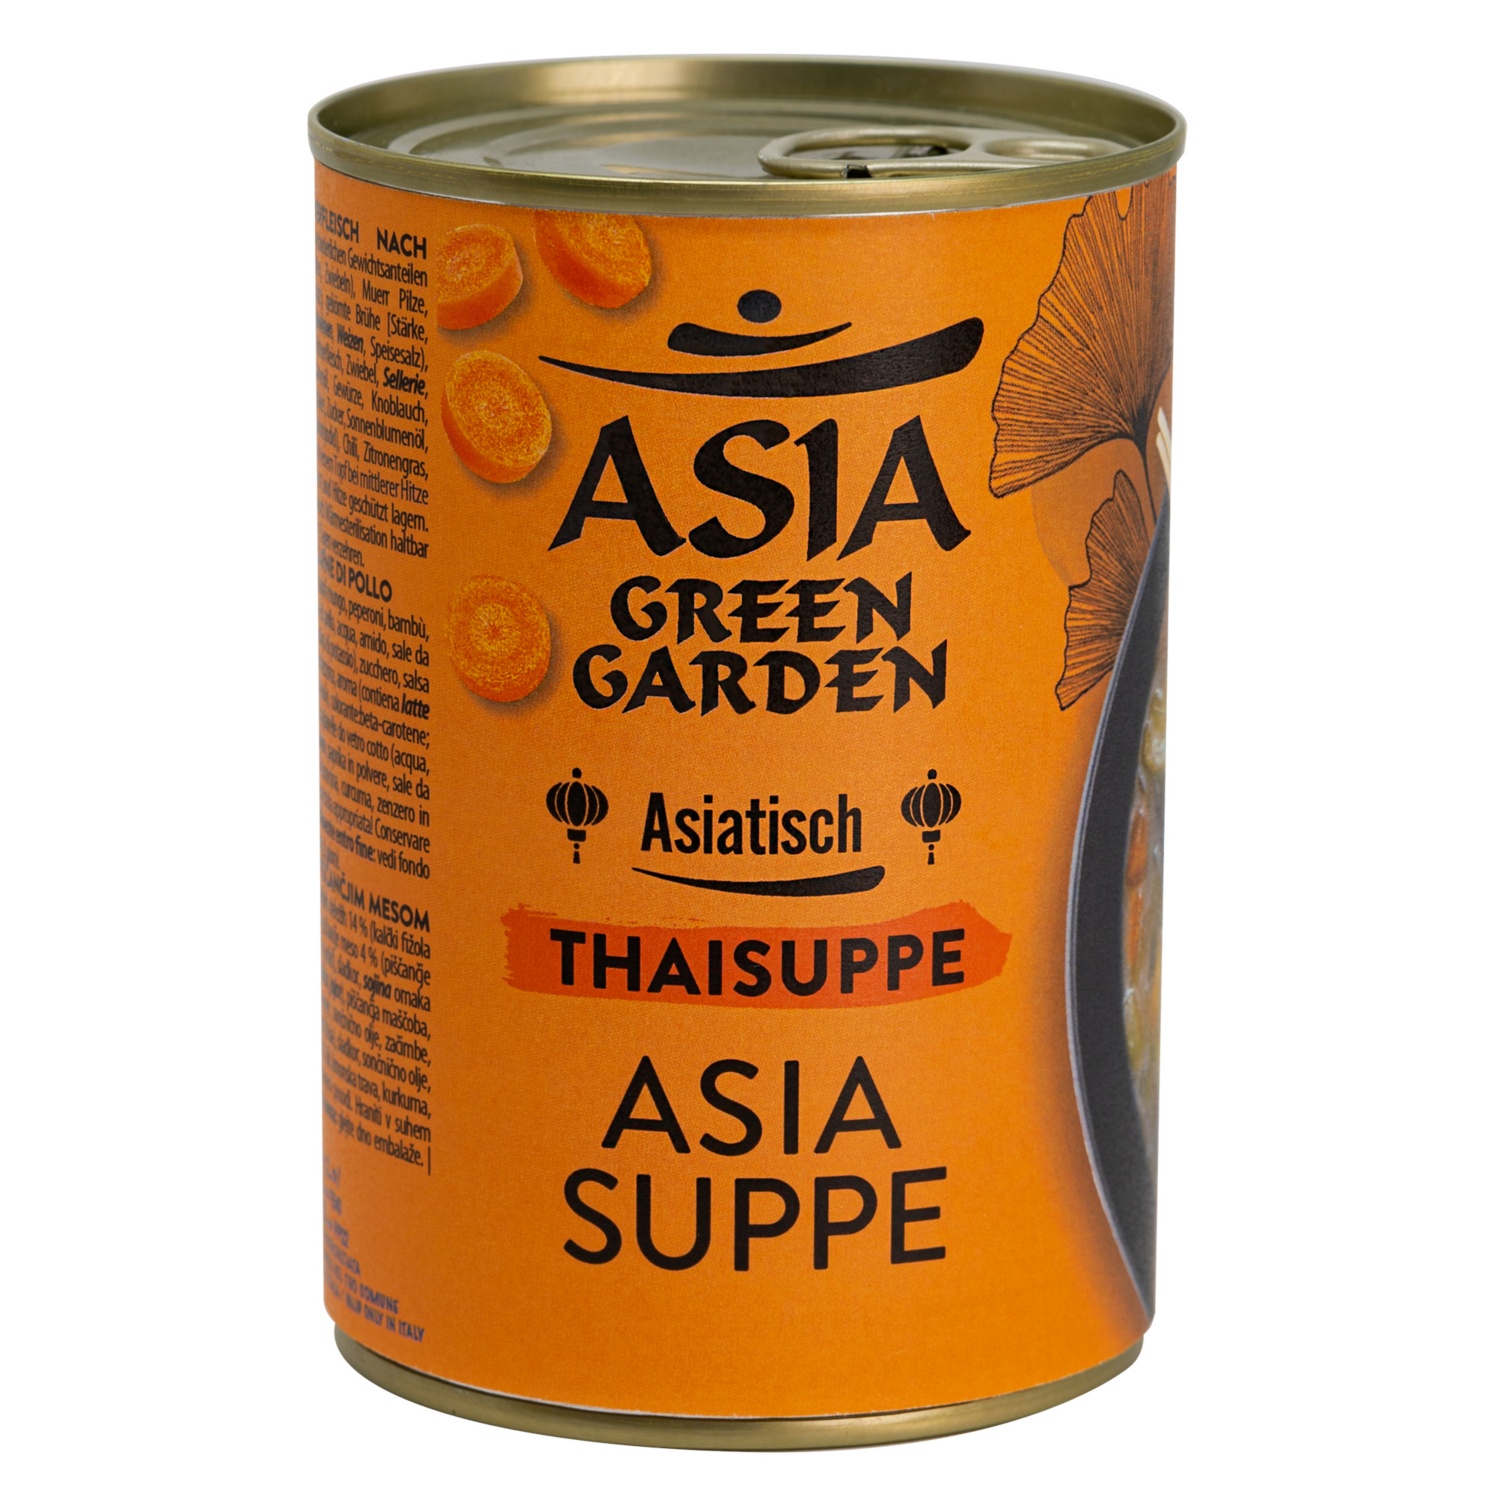 ASIA GREEN GARDEN Asiatische Suppe in der Dose,Thaisu